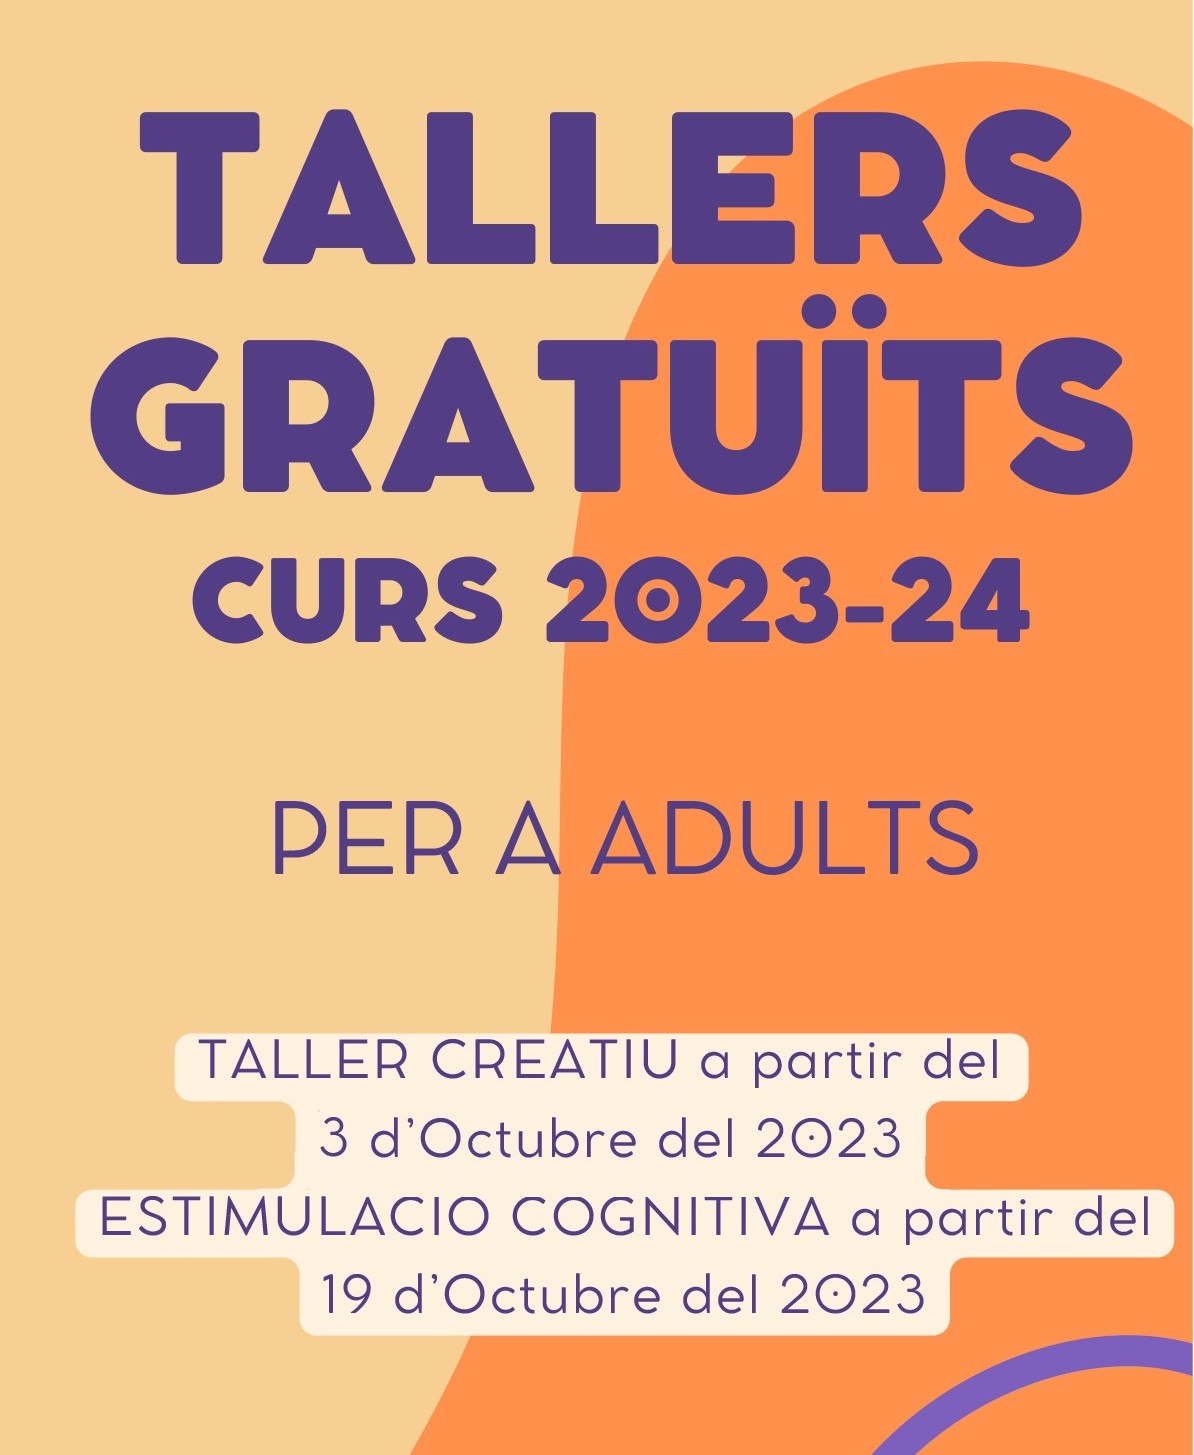 Tallers Gratuïts per a Adults: Inici del taller d'estimulació cognitiva